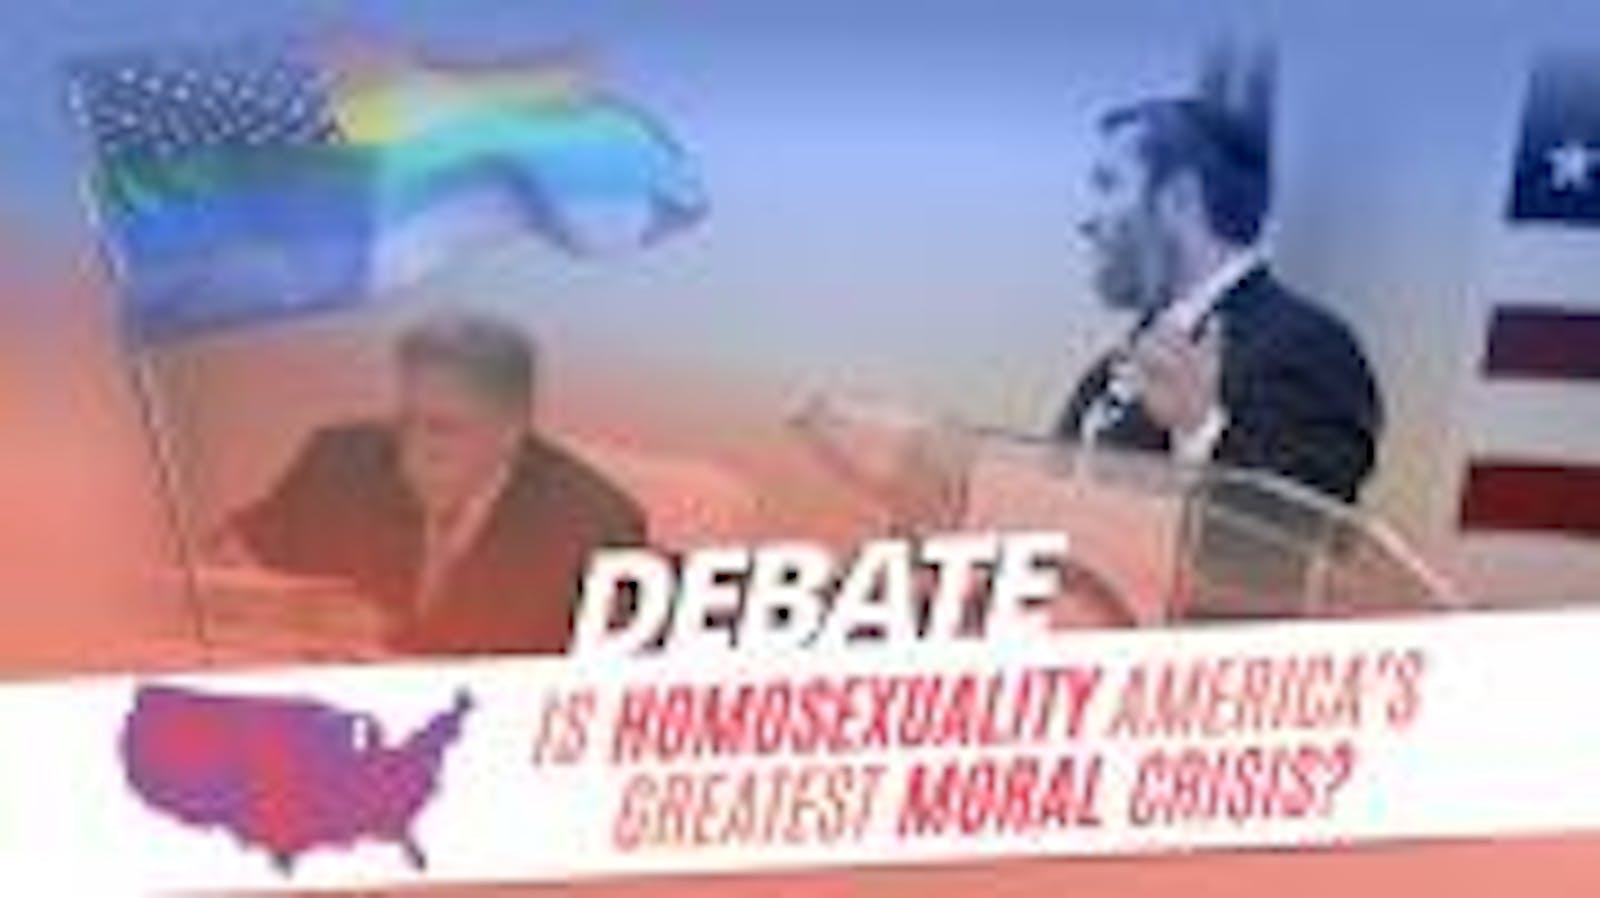 Debate Moral Crisis